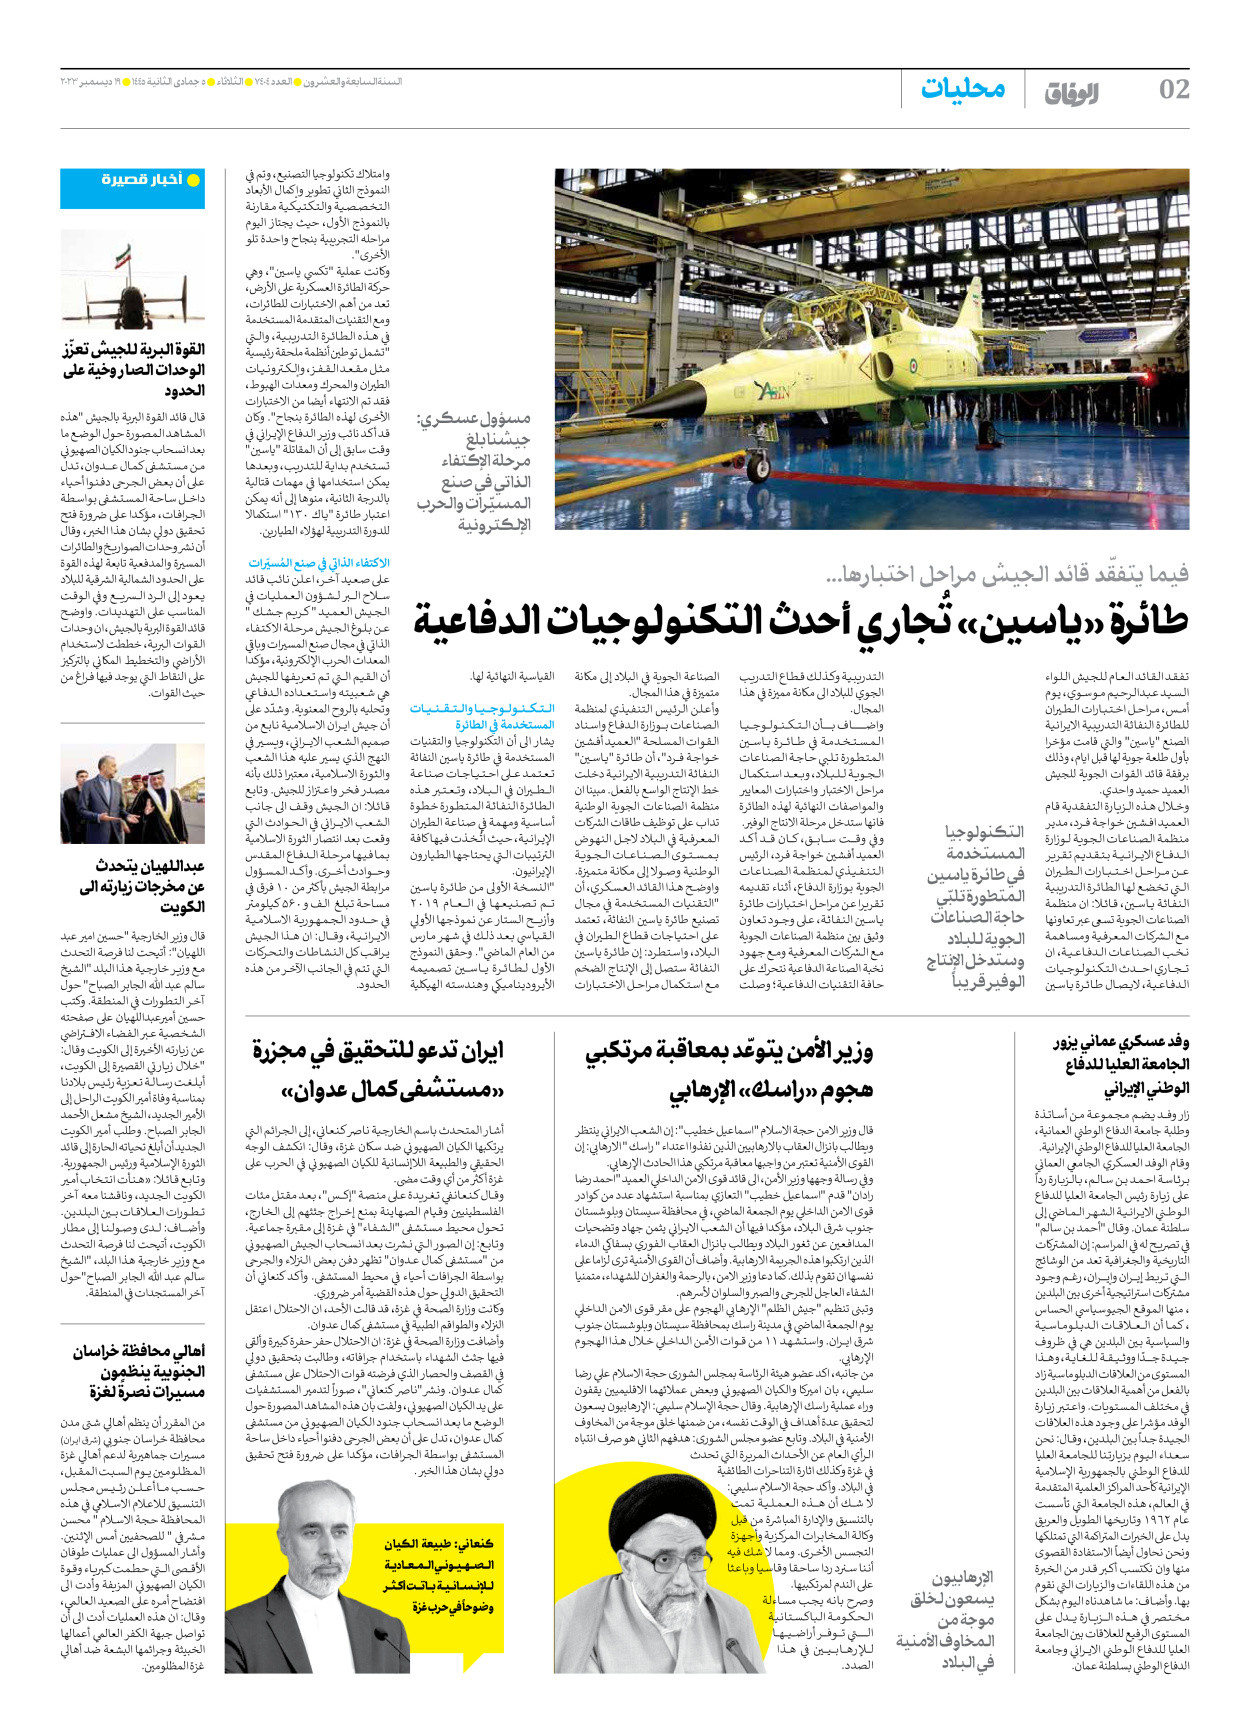 صحیفة ایران الدولیة الوفاق - العدد سبعة آلاف وأربعمائة وأربعة - ١٩ ديسمبر ٢٠٢٣ - الصفحة ۲